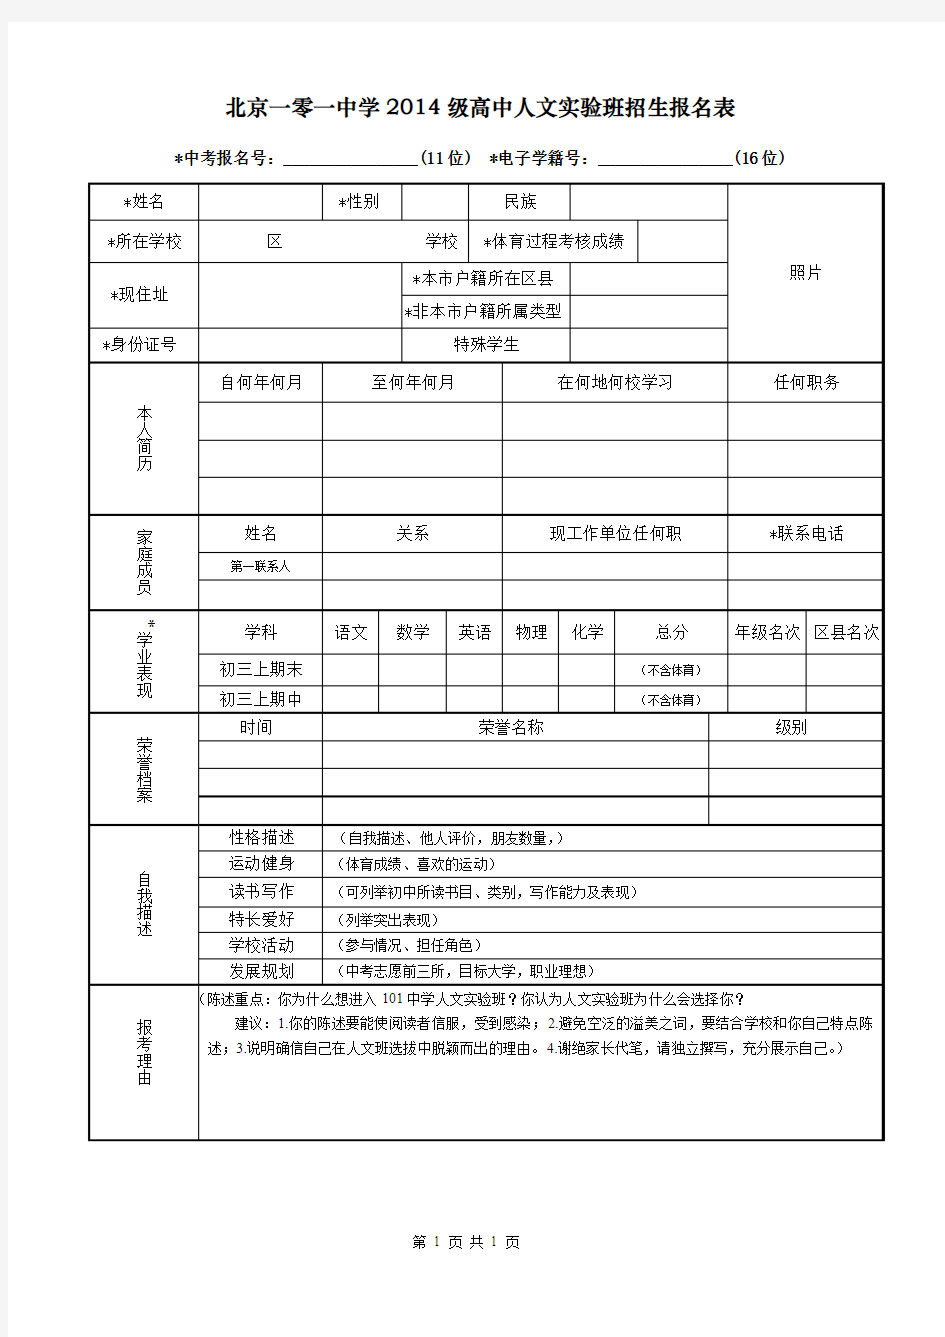 北京一零一中学2014级高中人文实验班招生报名表